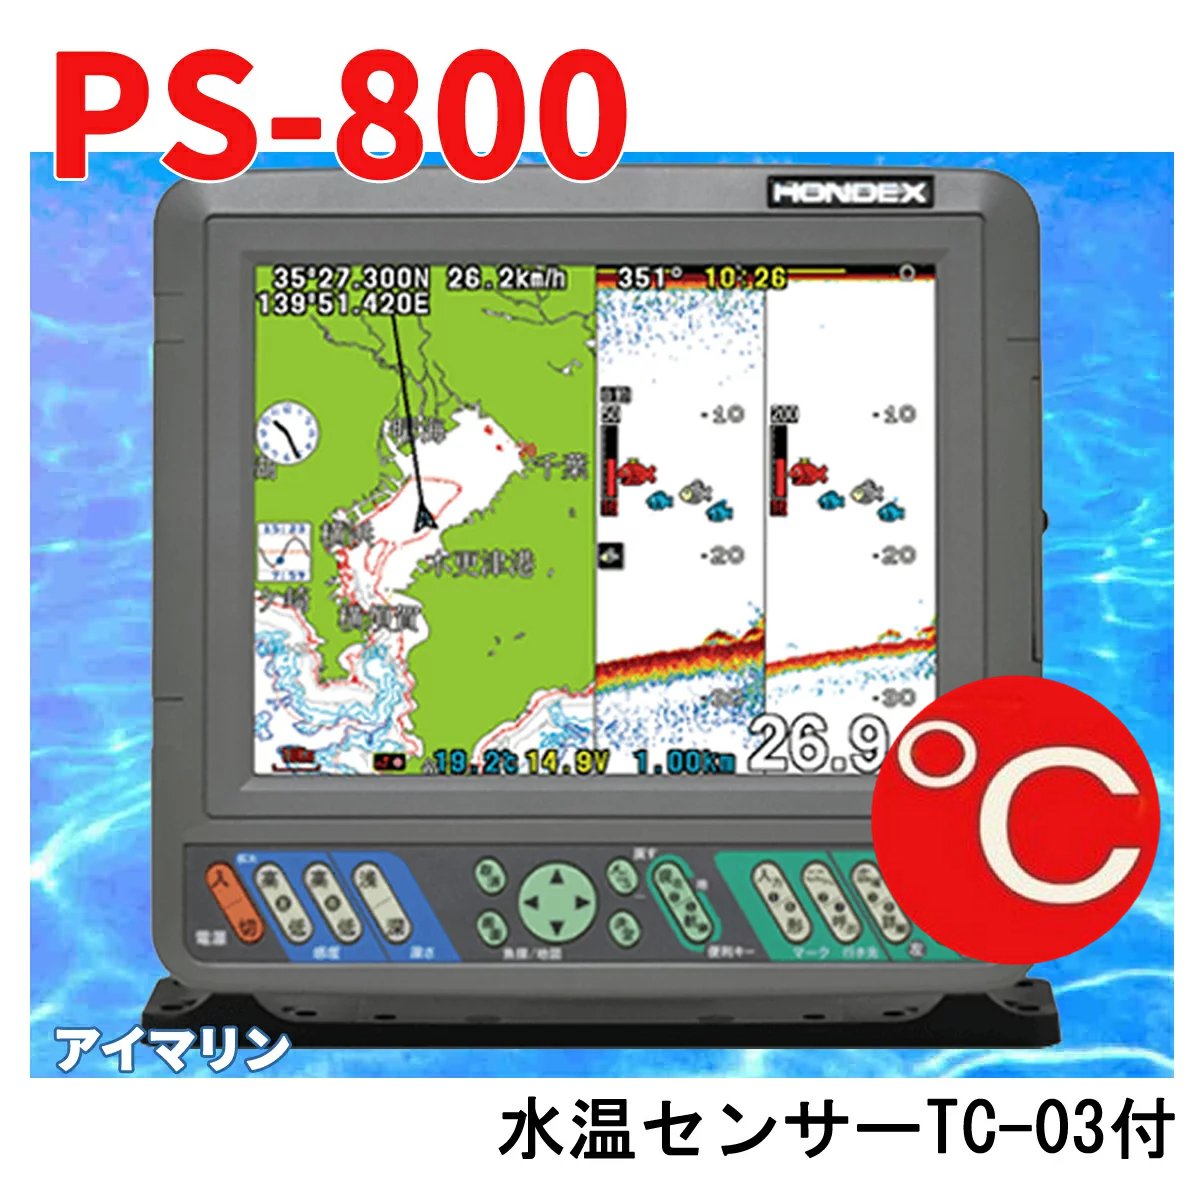 5/13 在庫あり TC03水温センサー付 PS-800GP 600w TD28 振動子付き HONDEX ホンデックス 8インチ PS800 魚群探知機 GPS内蔵